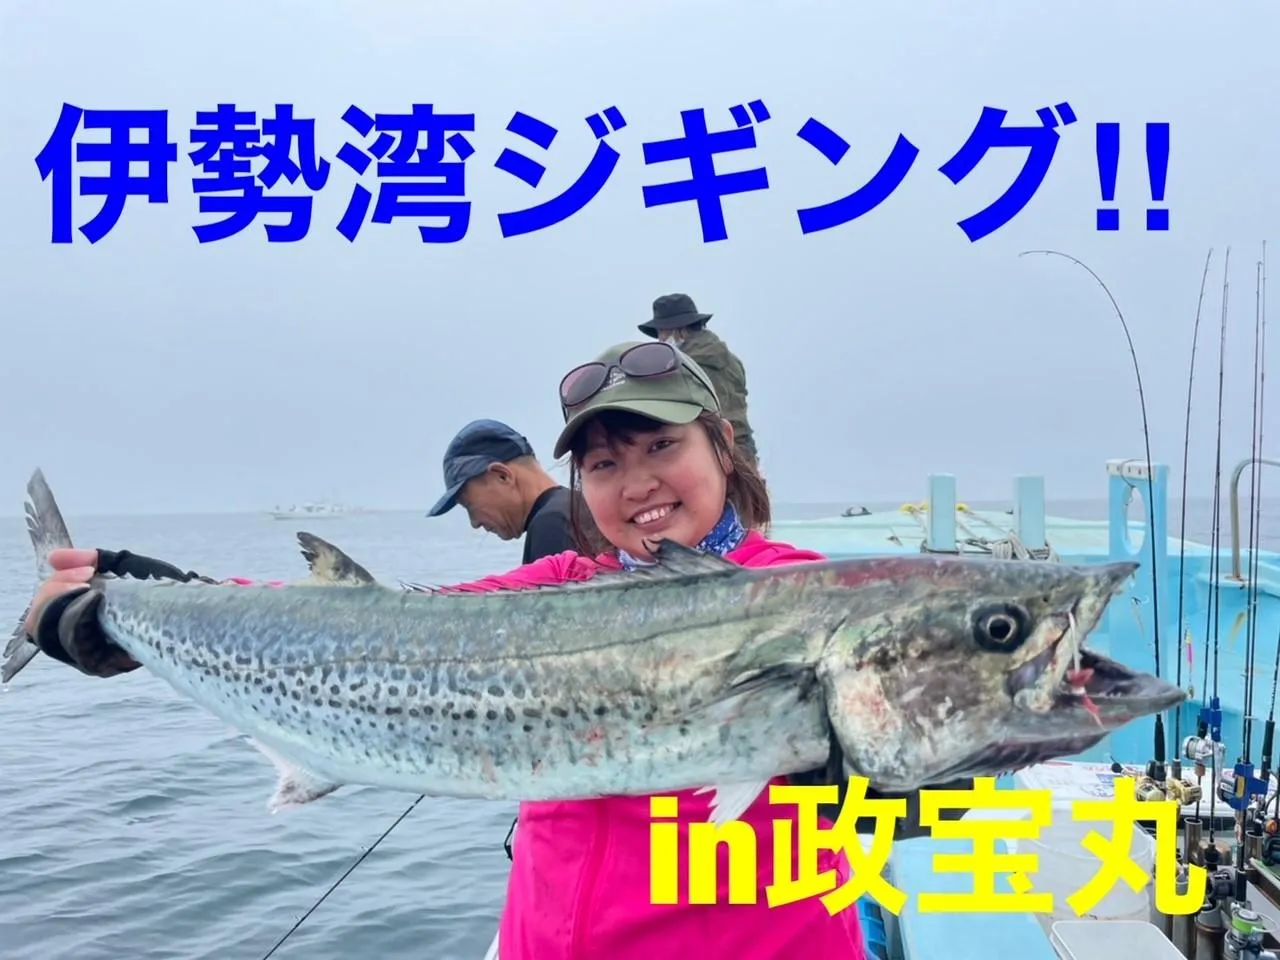 伊勢湾ジギングでサワラ イシグロ岡崎若松店 釣具のイシグロ 釣り情報サイト